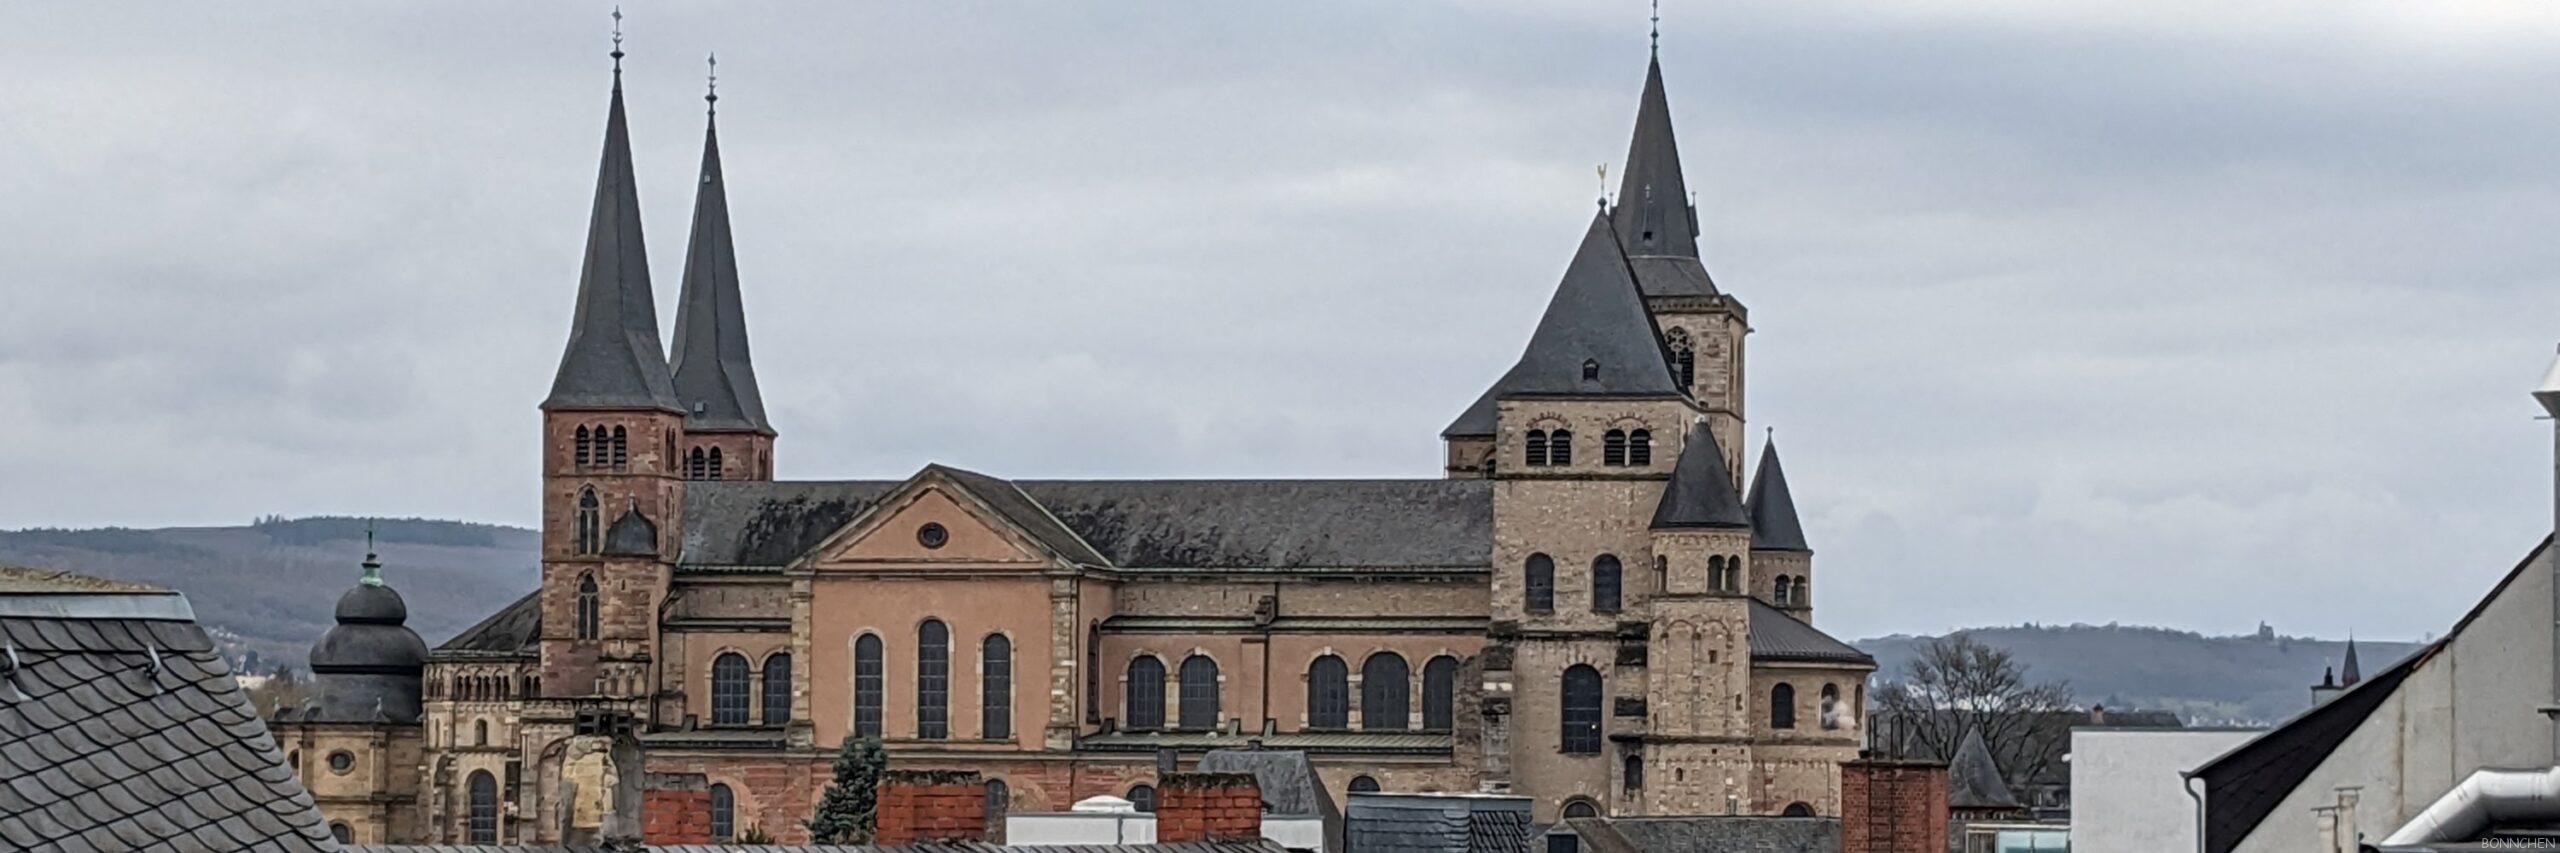 Liebfrauenkirche Trier neben dem Dom